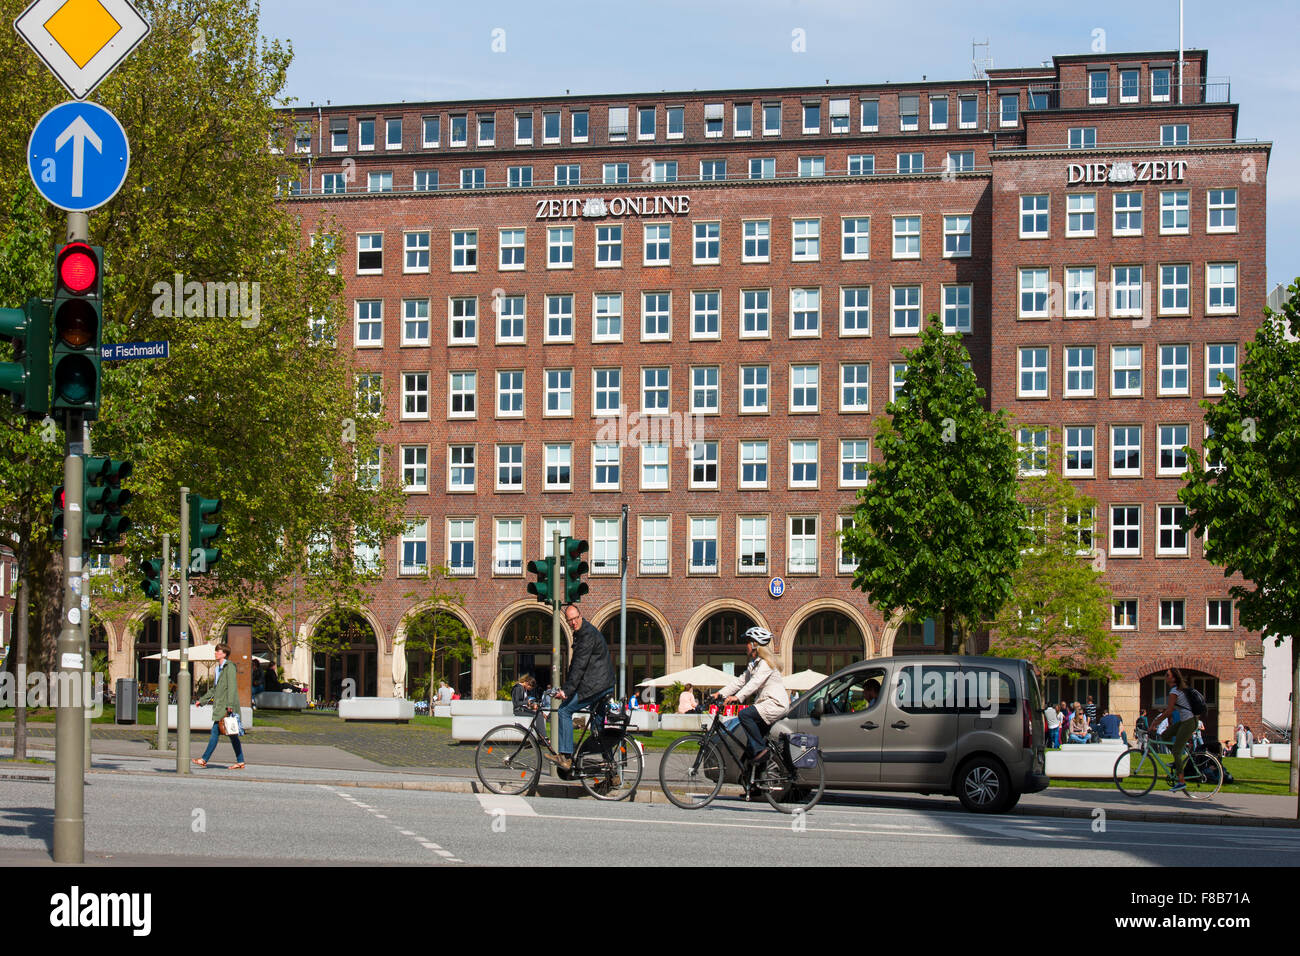 Deutschland, Hamburg, Verlagsgebäuder der Zeitung 'Die Zeit' Stock Photo